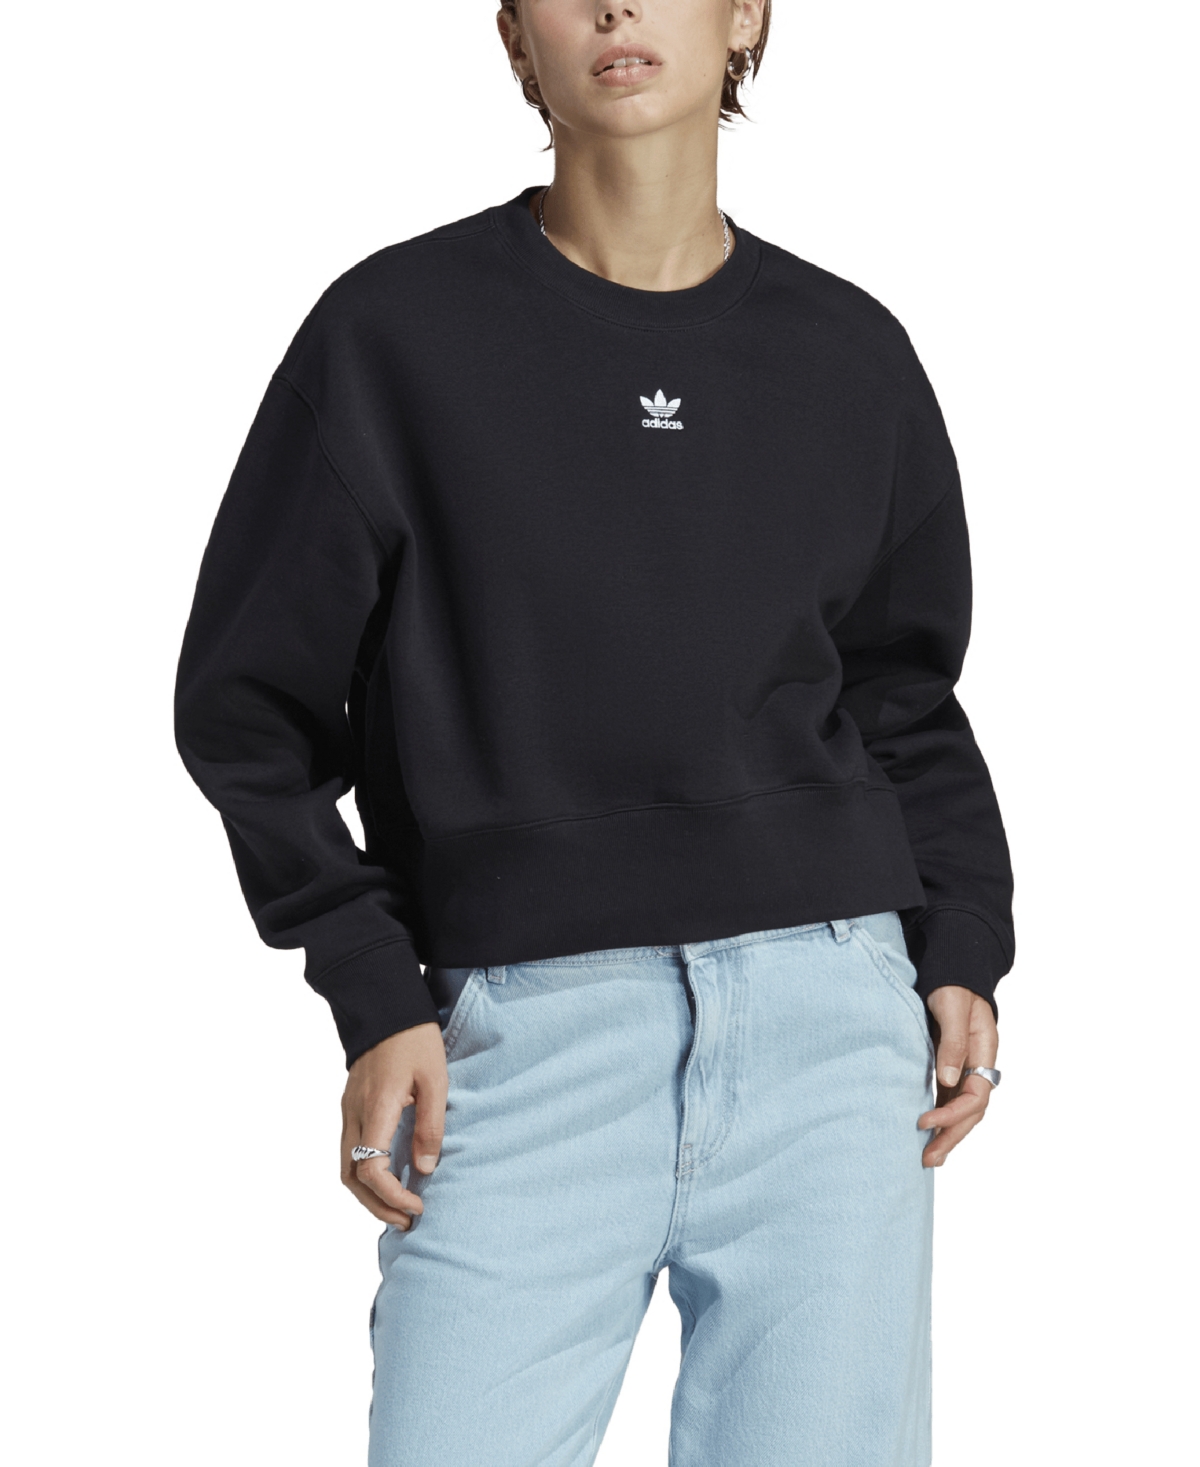  adidas Originals Women's Essentials Fleece Crewneck Sweatshirt